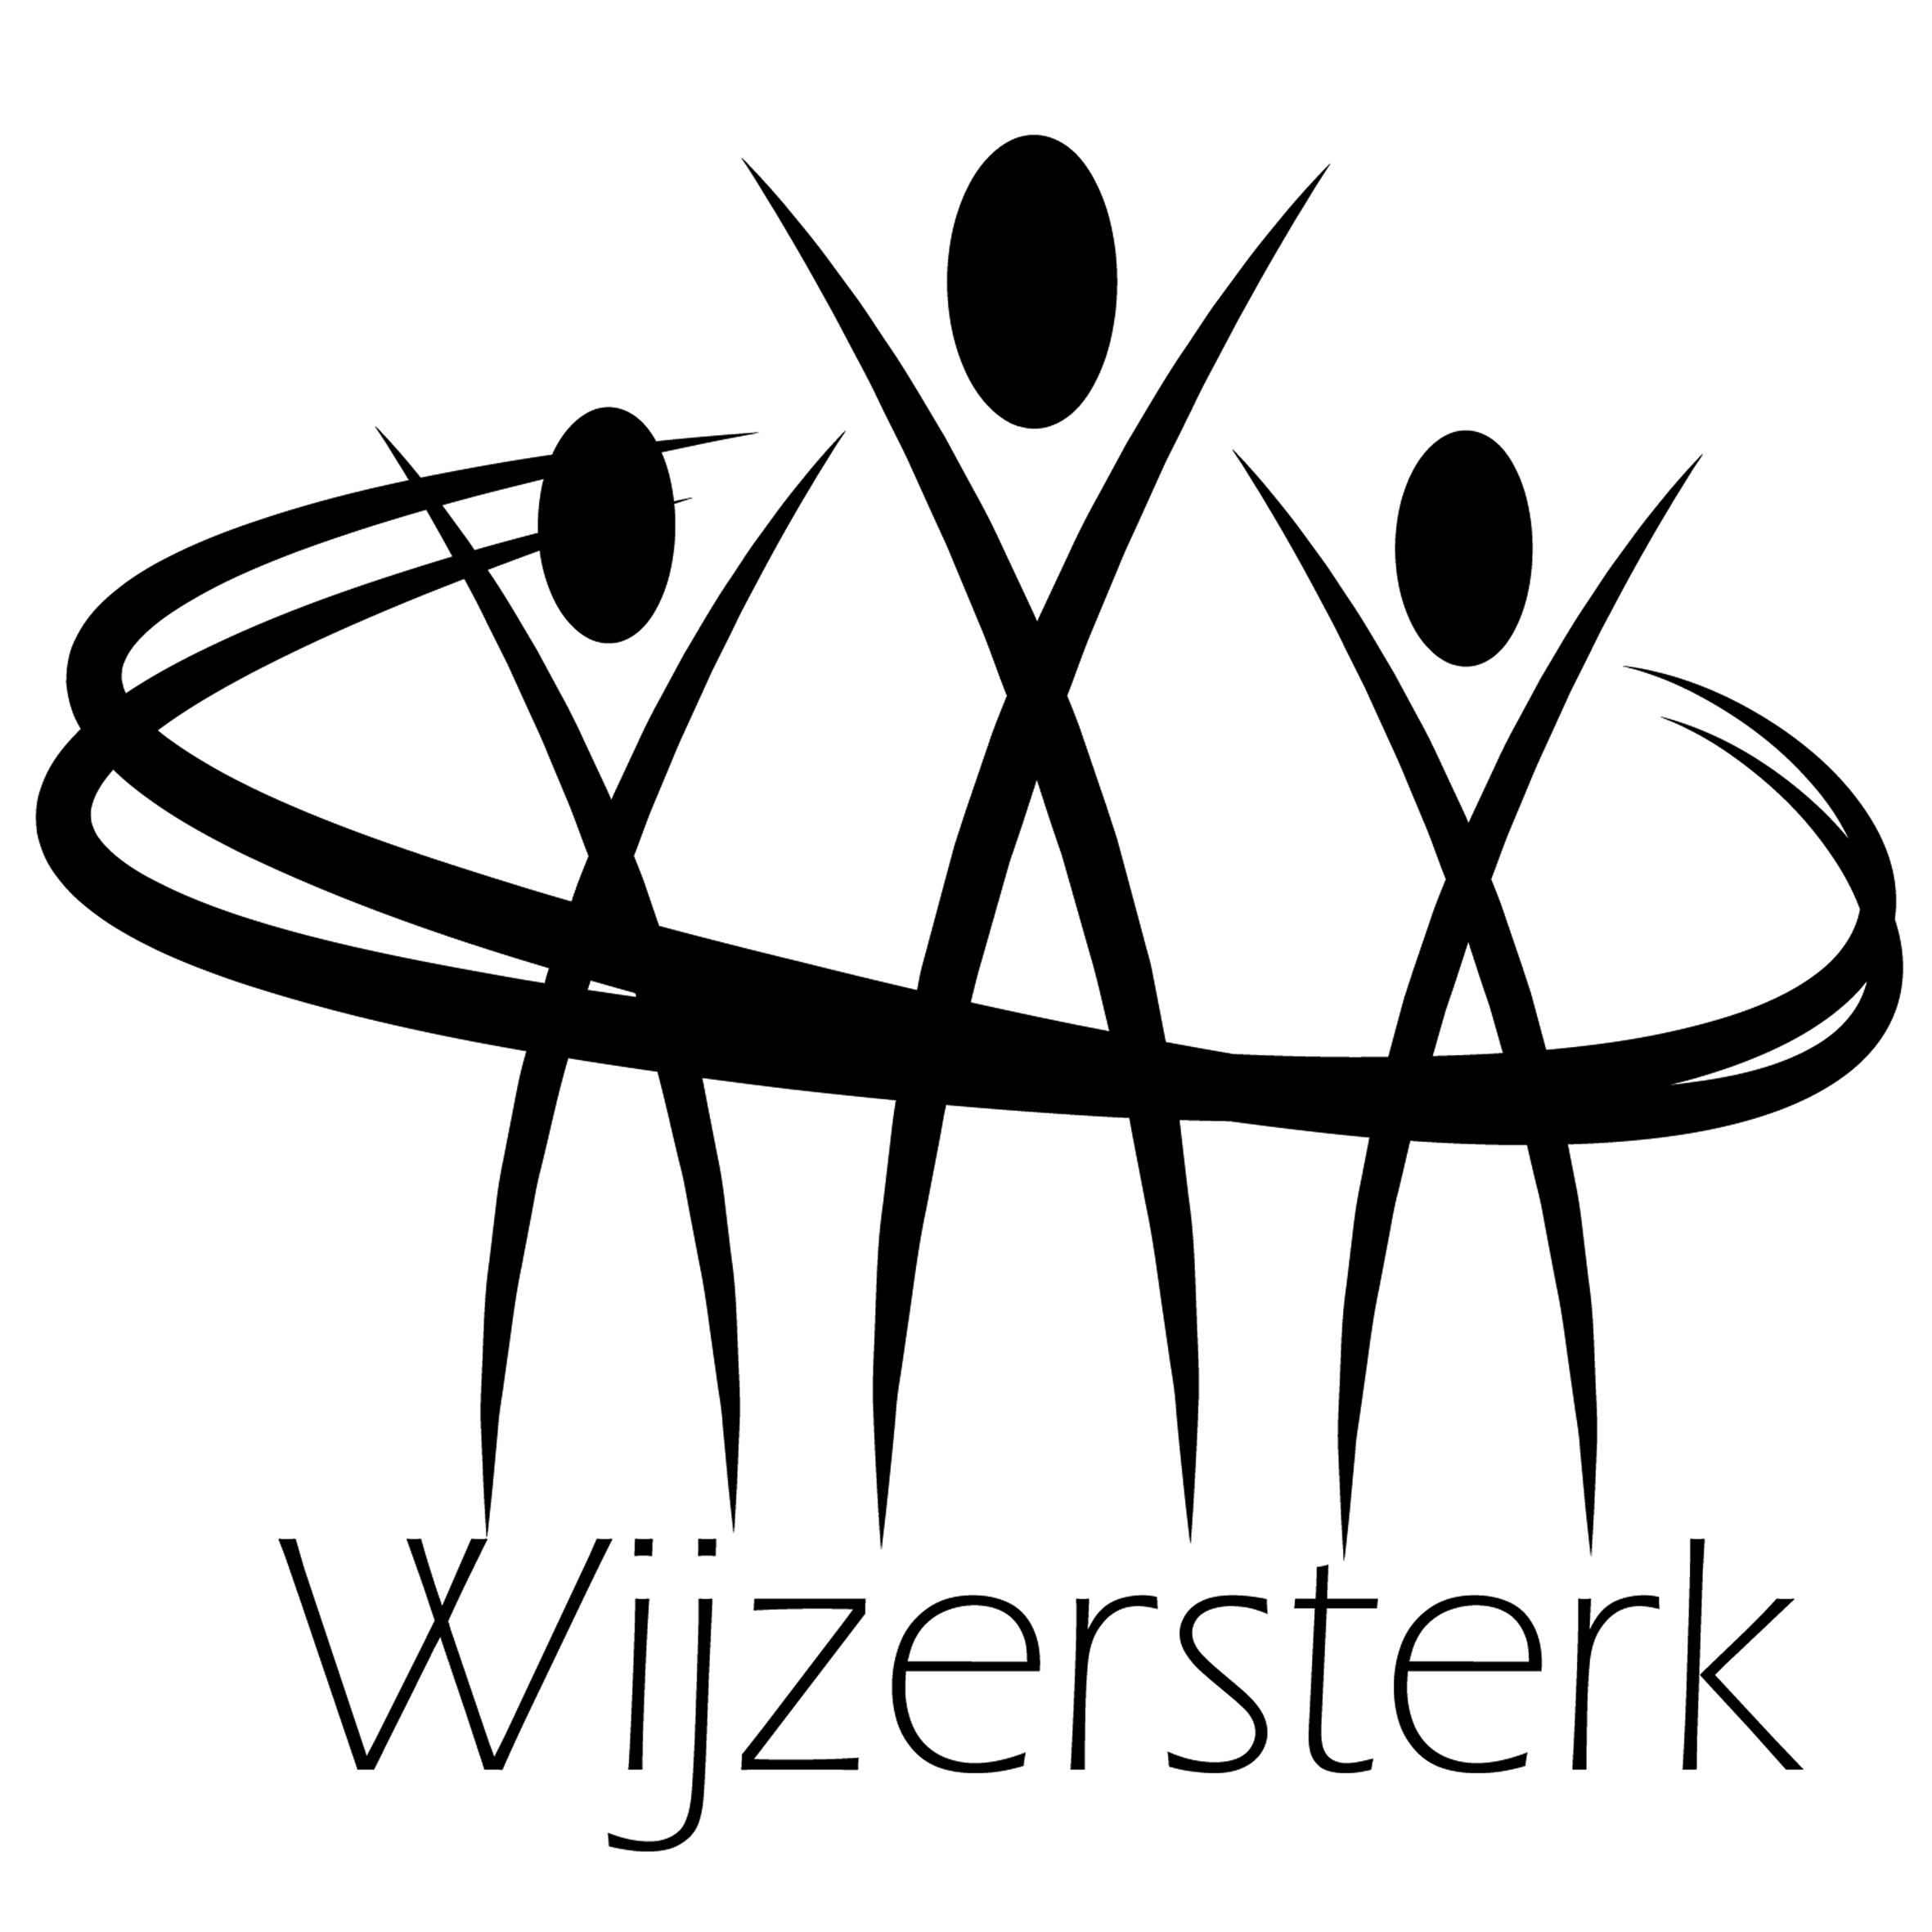 Wijzersterk vzw logo